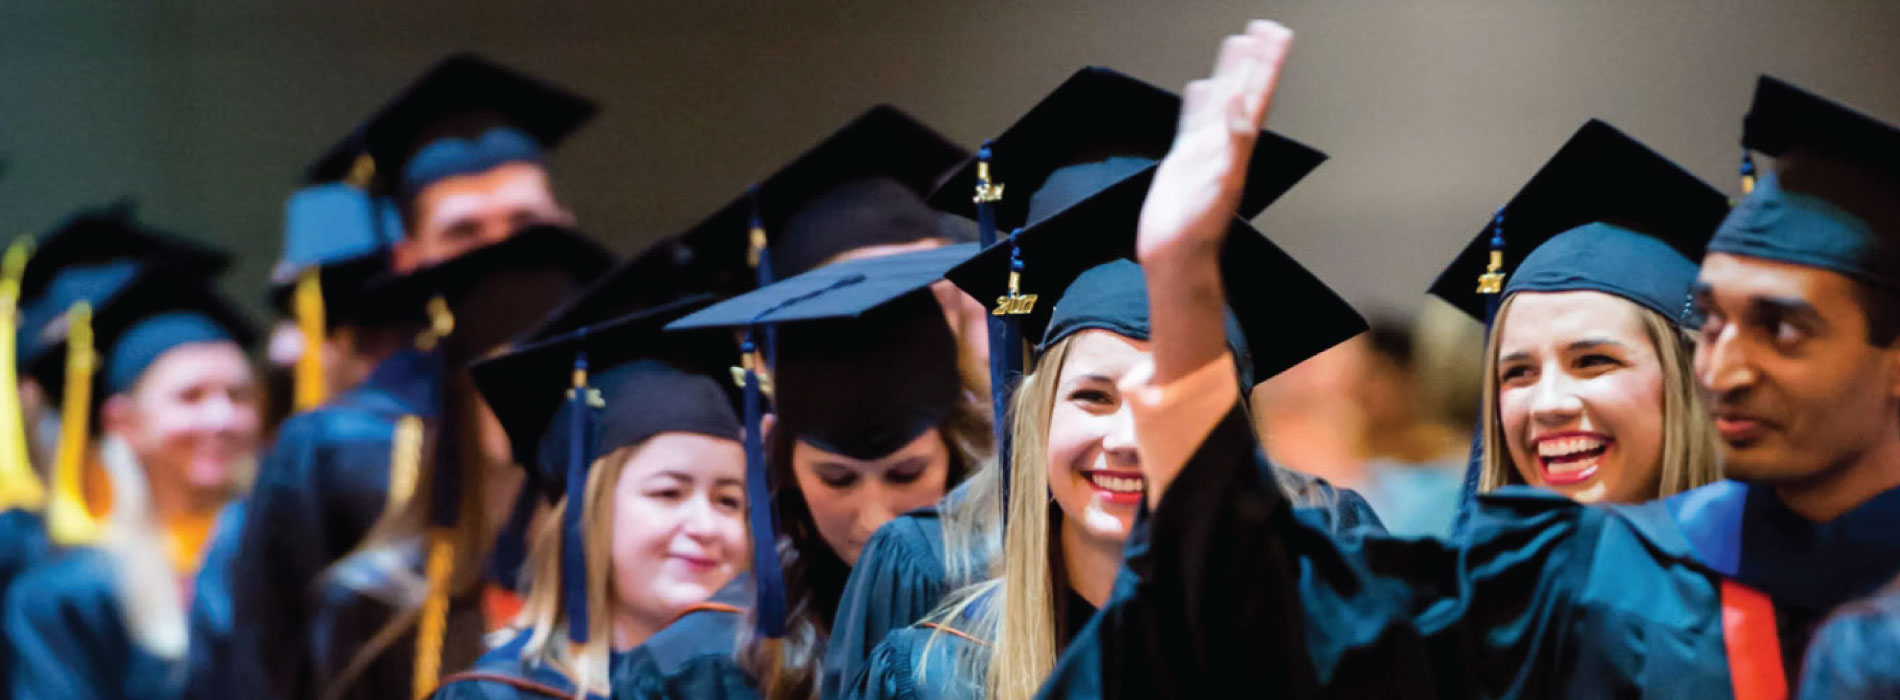 graduating students smiling and waving